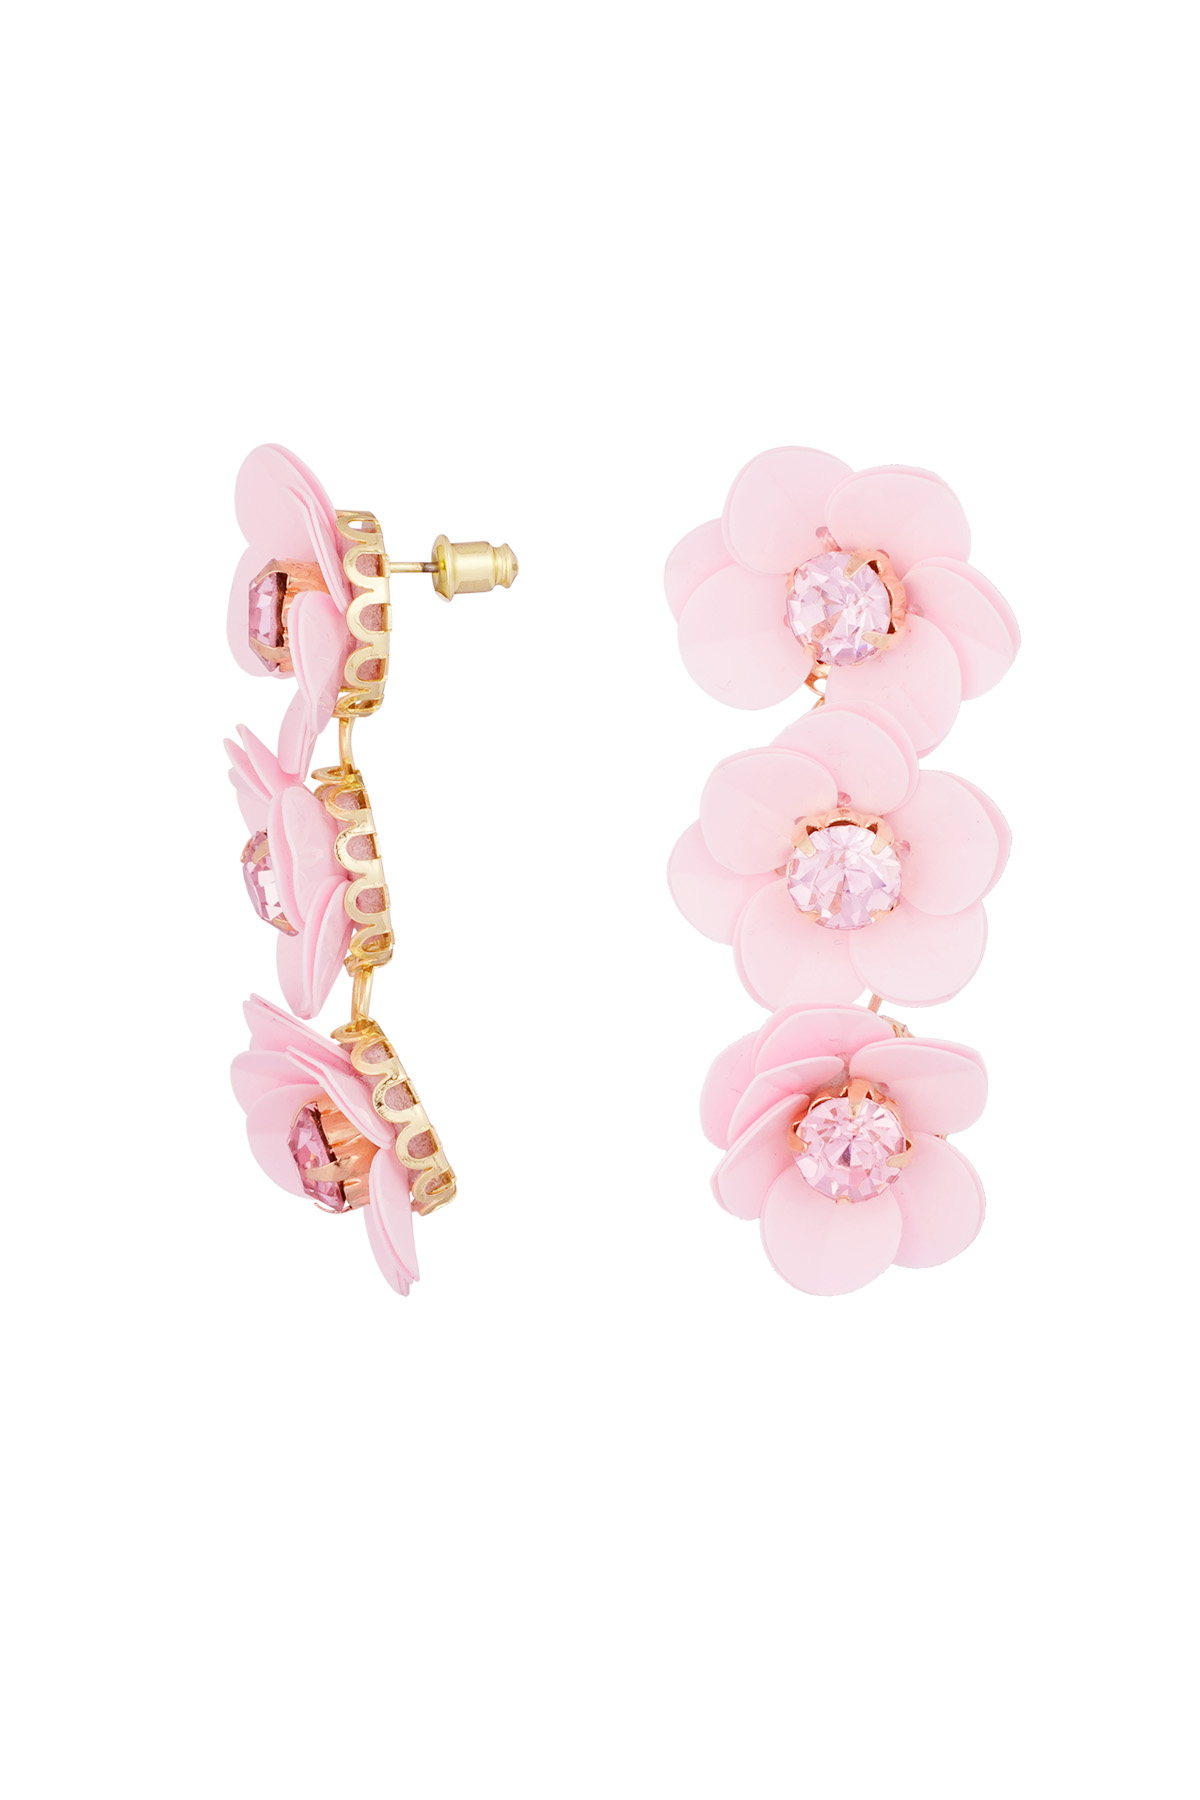 Summery floral trio earrings - pale pink